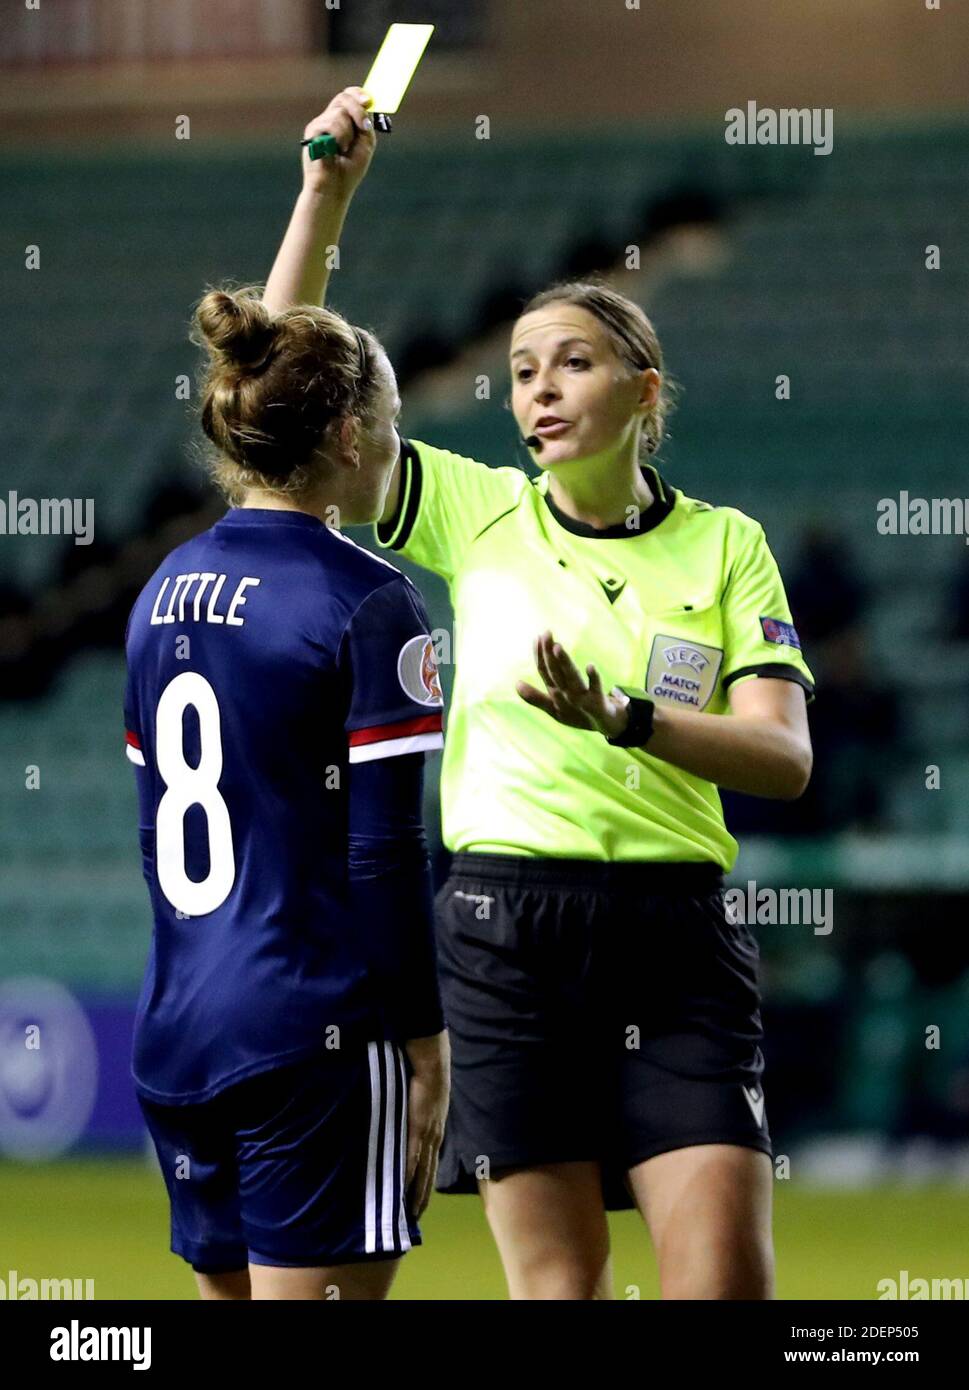 La escocesa Kim Little (izquierda) recibe una tarjeta amarilla durante el partido de la UEFA Women's Euro 2021 Qualifying Group E en Easter Road, Edimburgo. Foto de stock